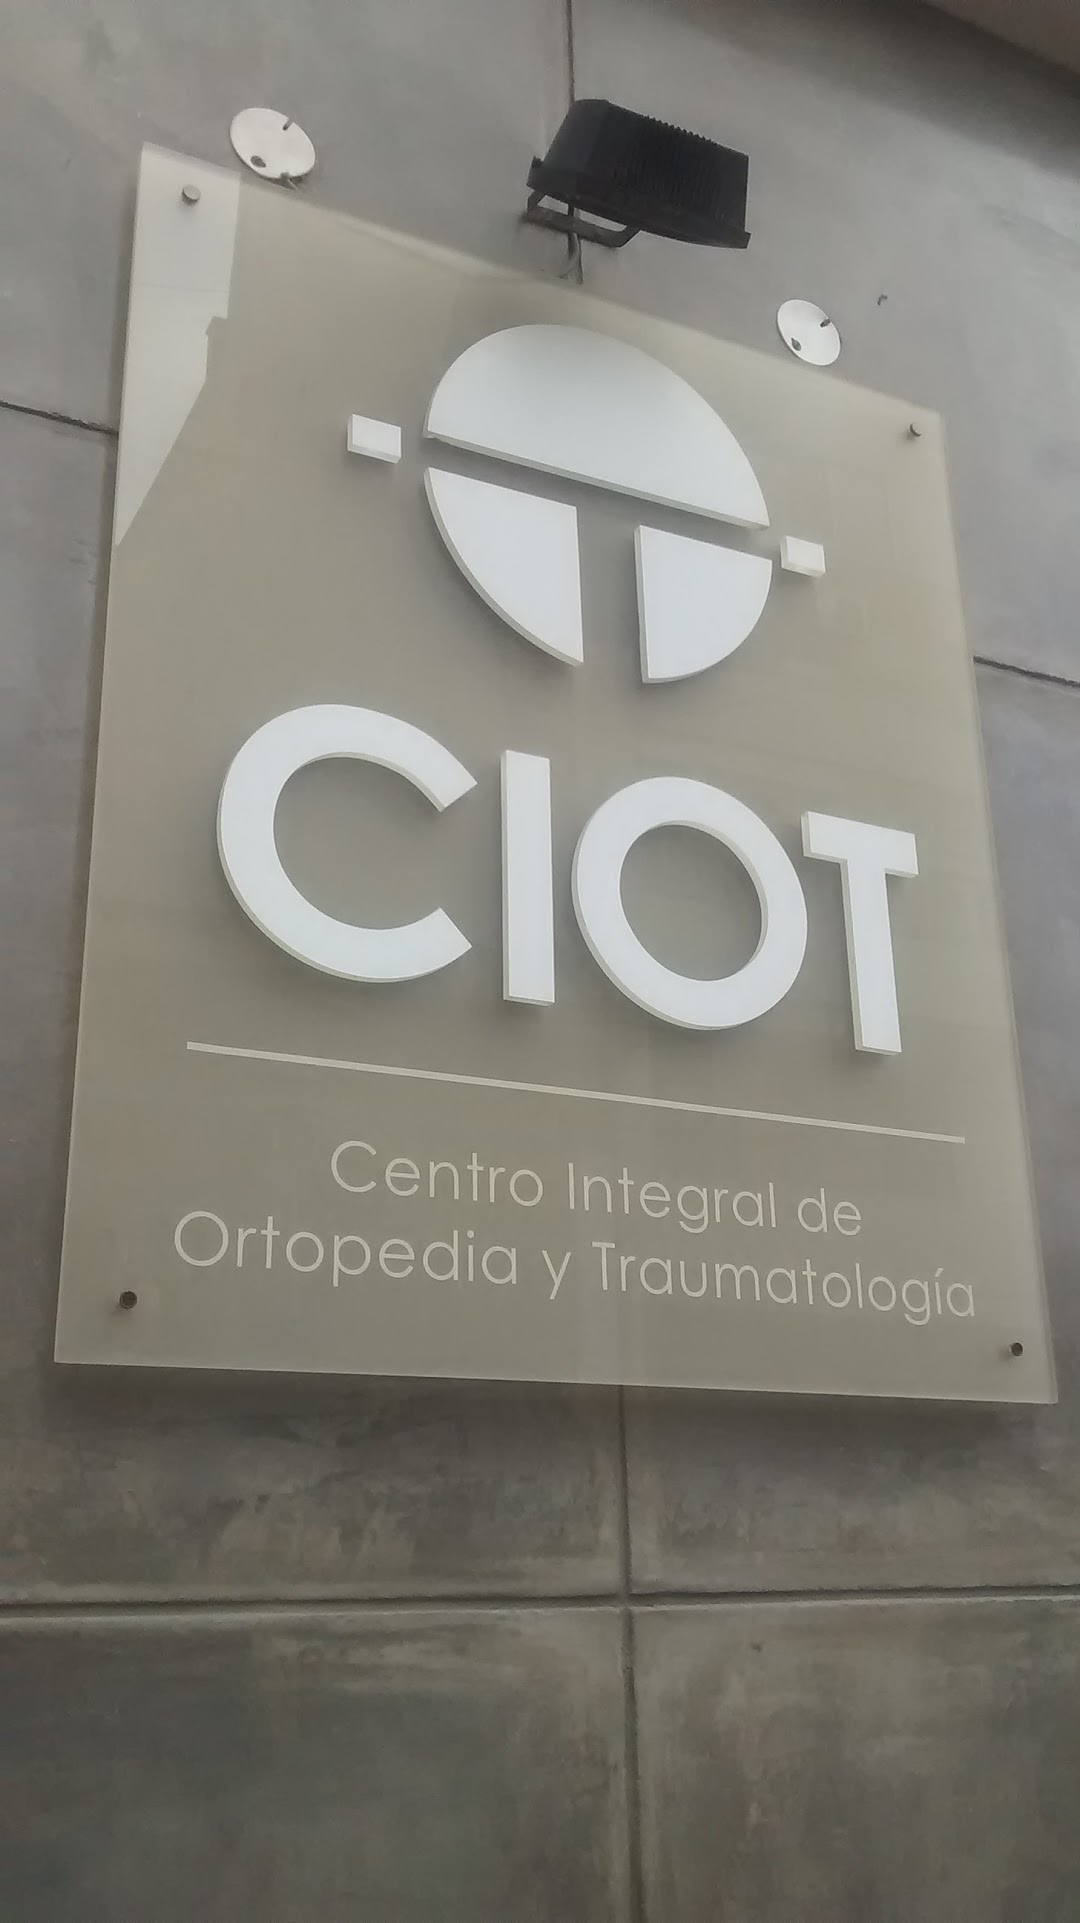 CIOT Centro Integral de Ortopedia y Traumatología